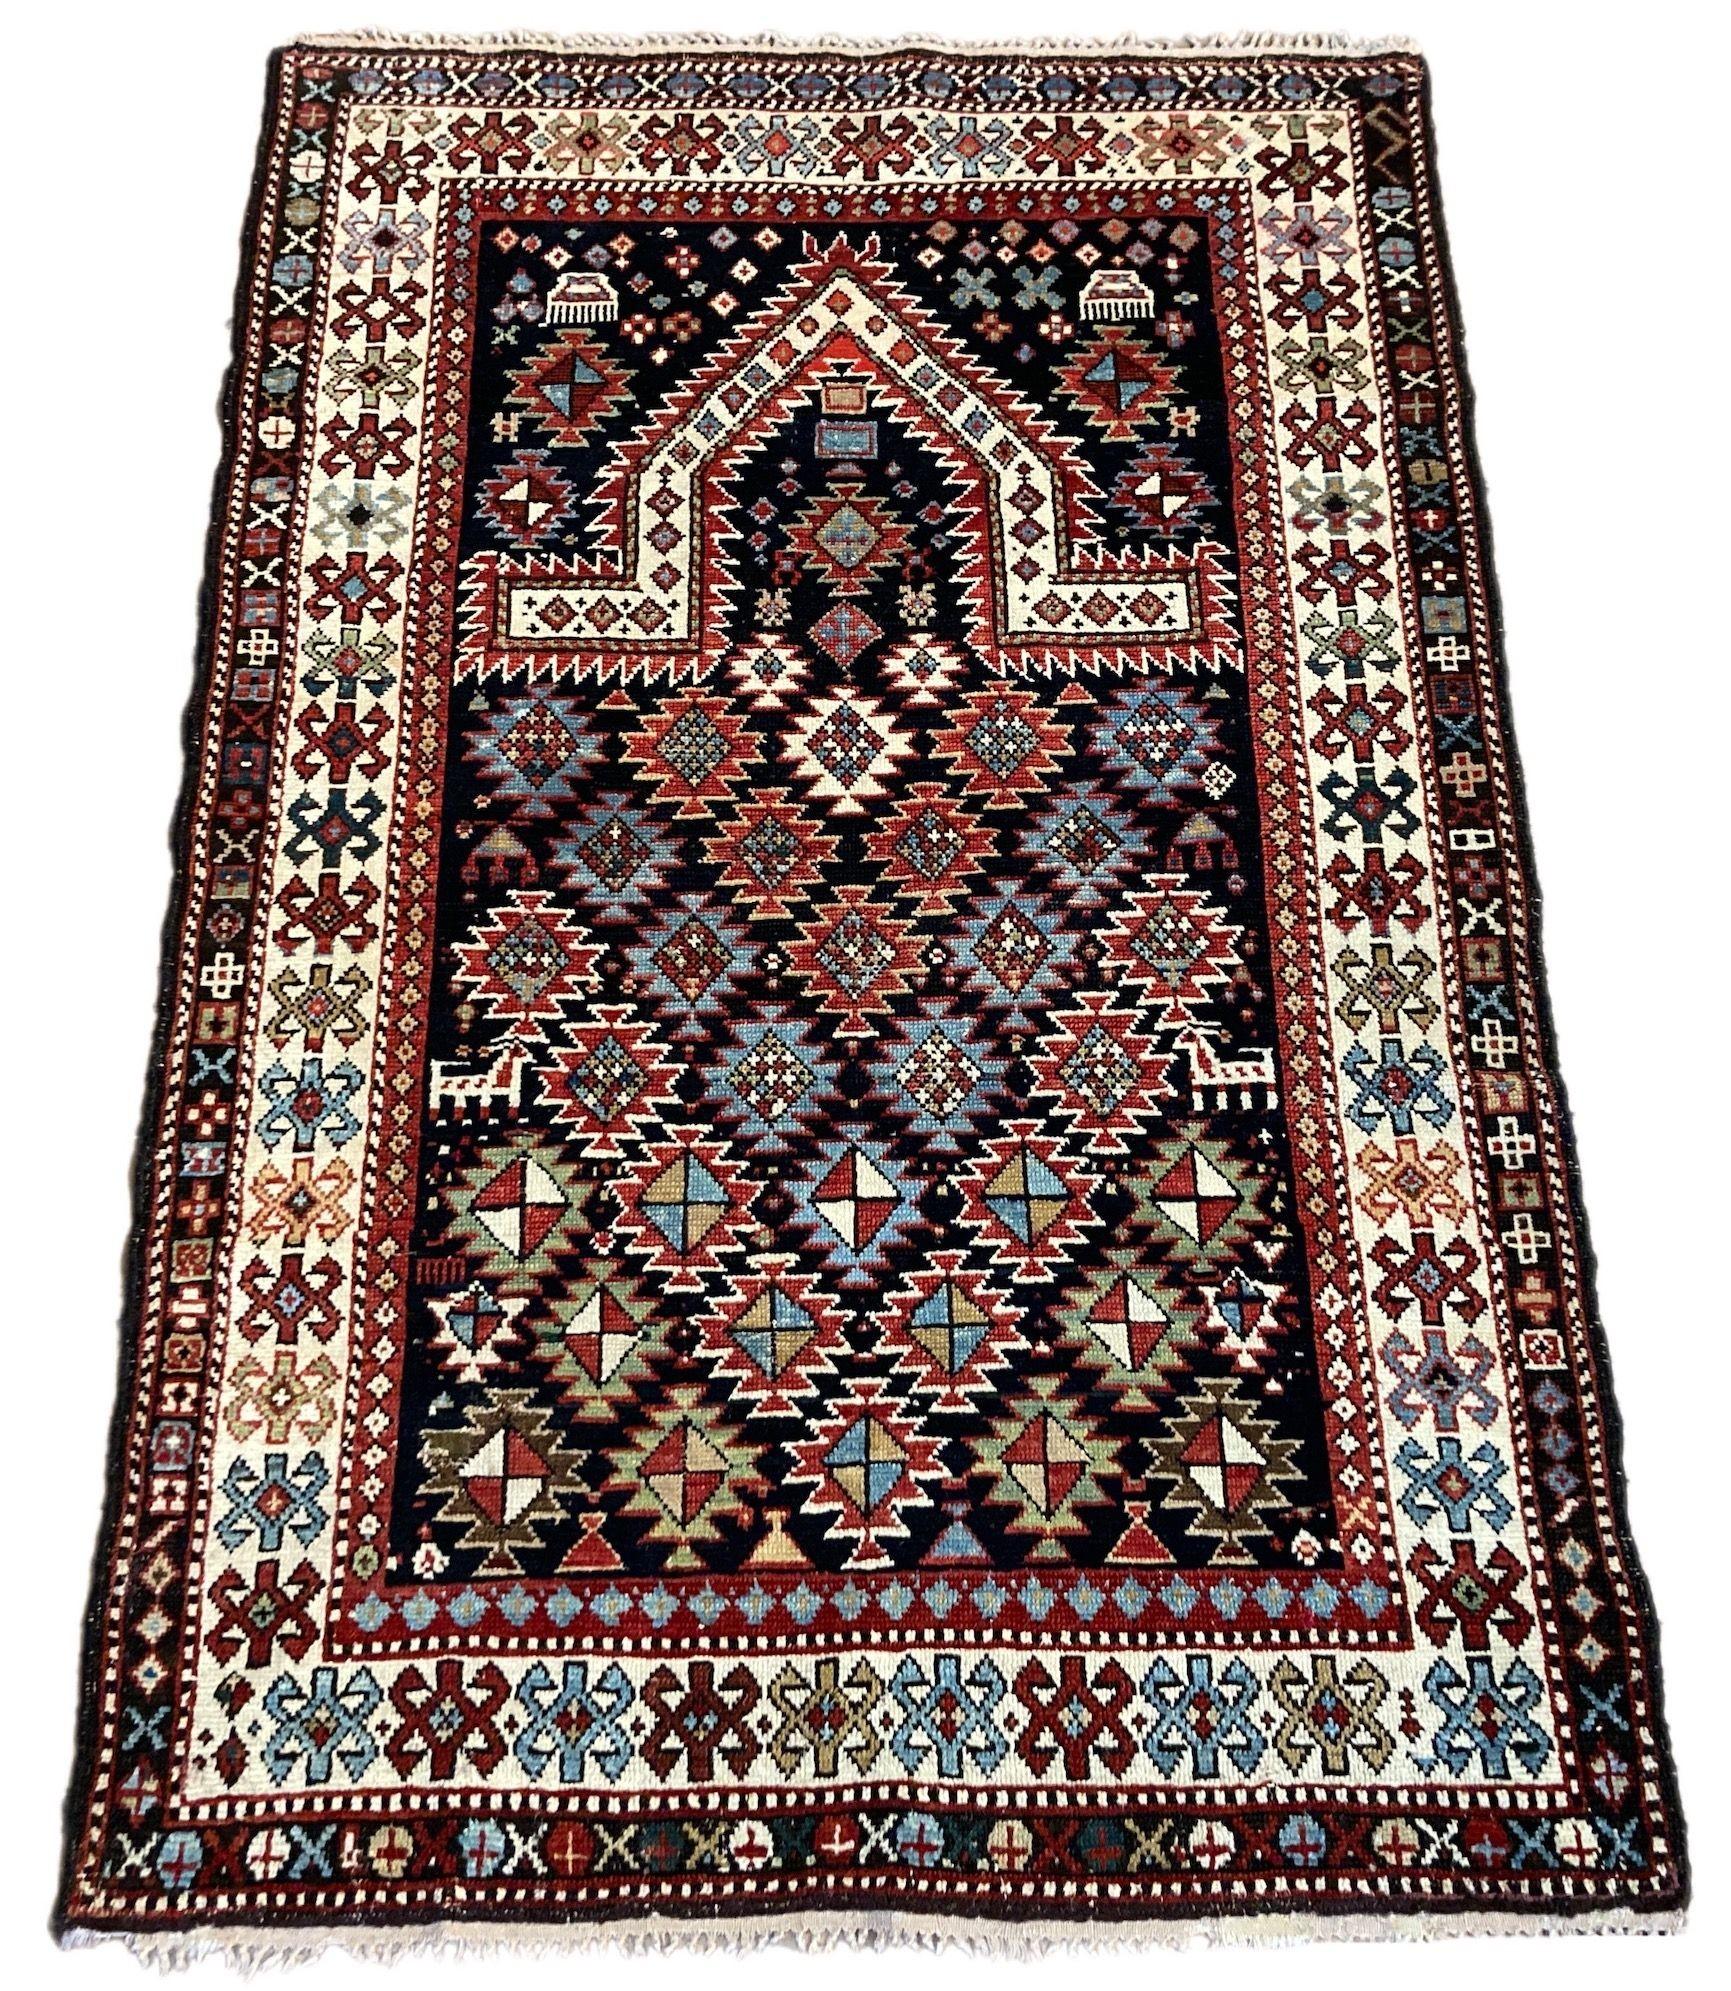 Un beau petit tapis ancien, tissé à la main dans les montagnes du Caucase, probablement au Daghestan, vers 1900. Il présente un motif traditionnel de Mihrab sur un champ de losanges d'un indigo profond avec une bordure ivoire. Notez les figures de